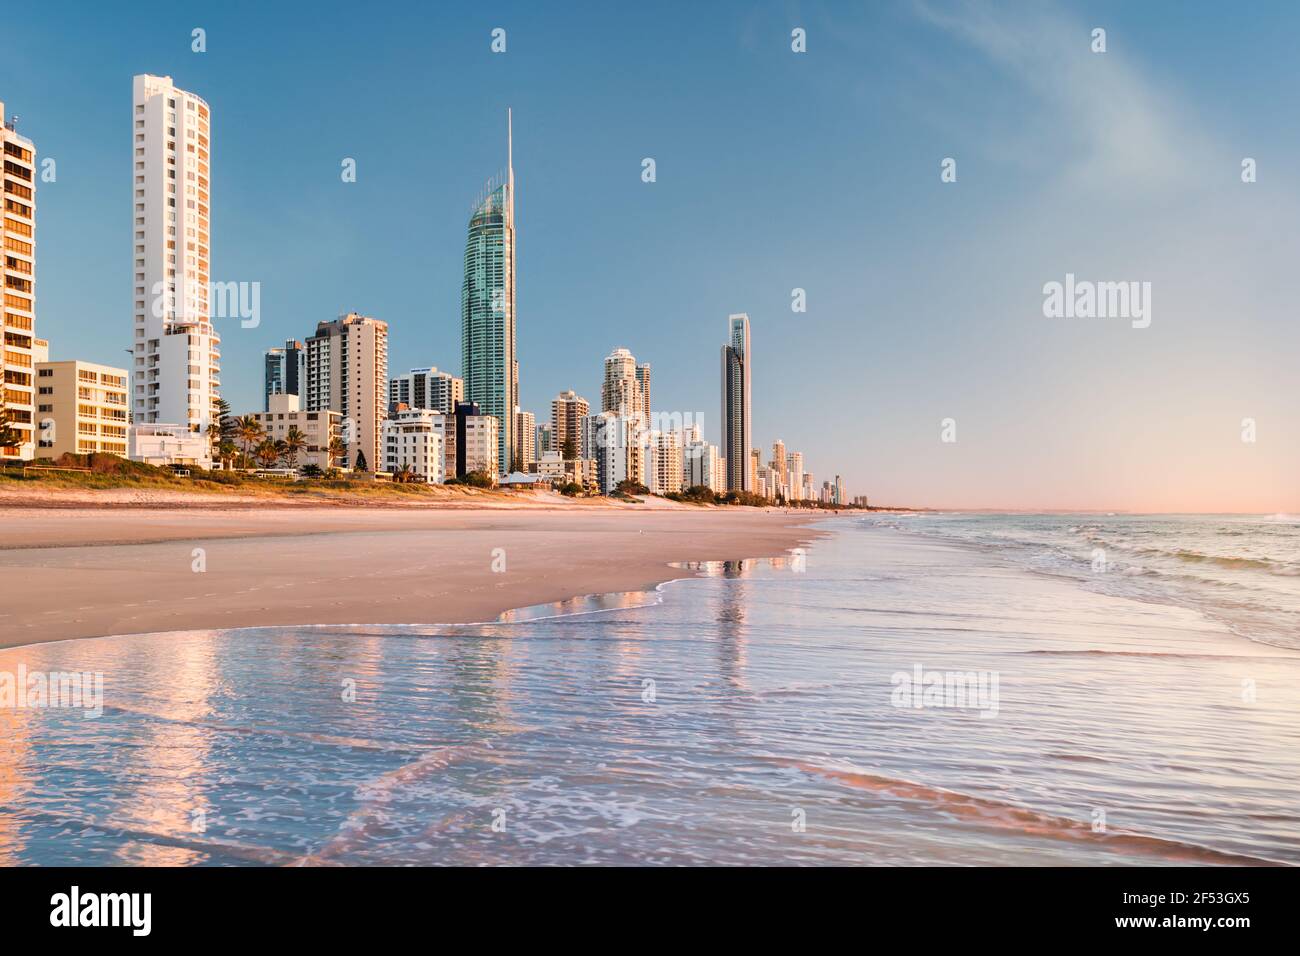 Tôt le matin, Surfers Paradise Beach. Cette plage populaire se trouve sur la Gold Coast, Queensland, en Australie et est populaire auprès des touristes et des habitants de la région. Banque D'Images